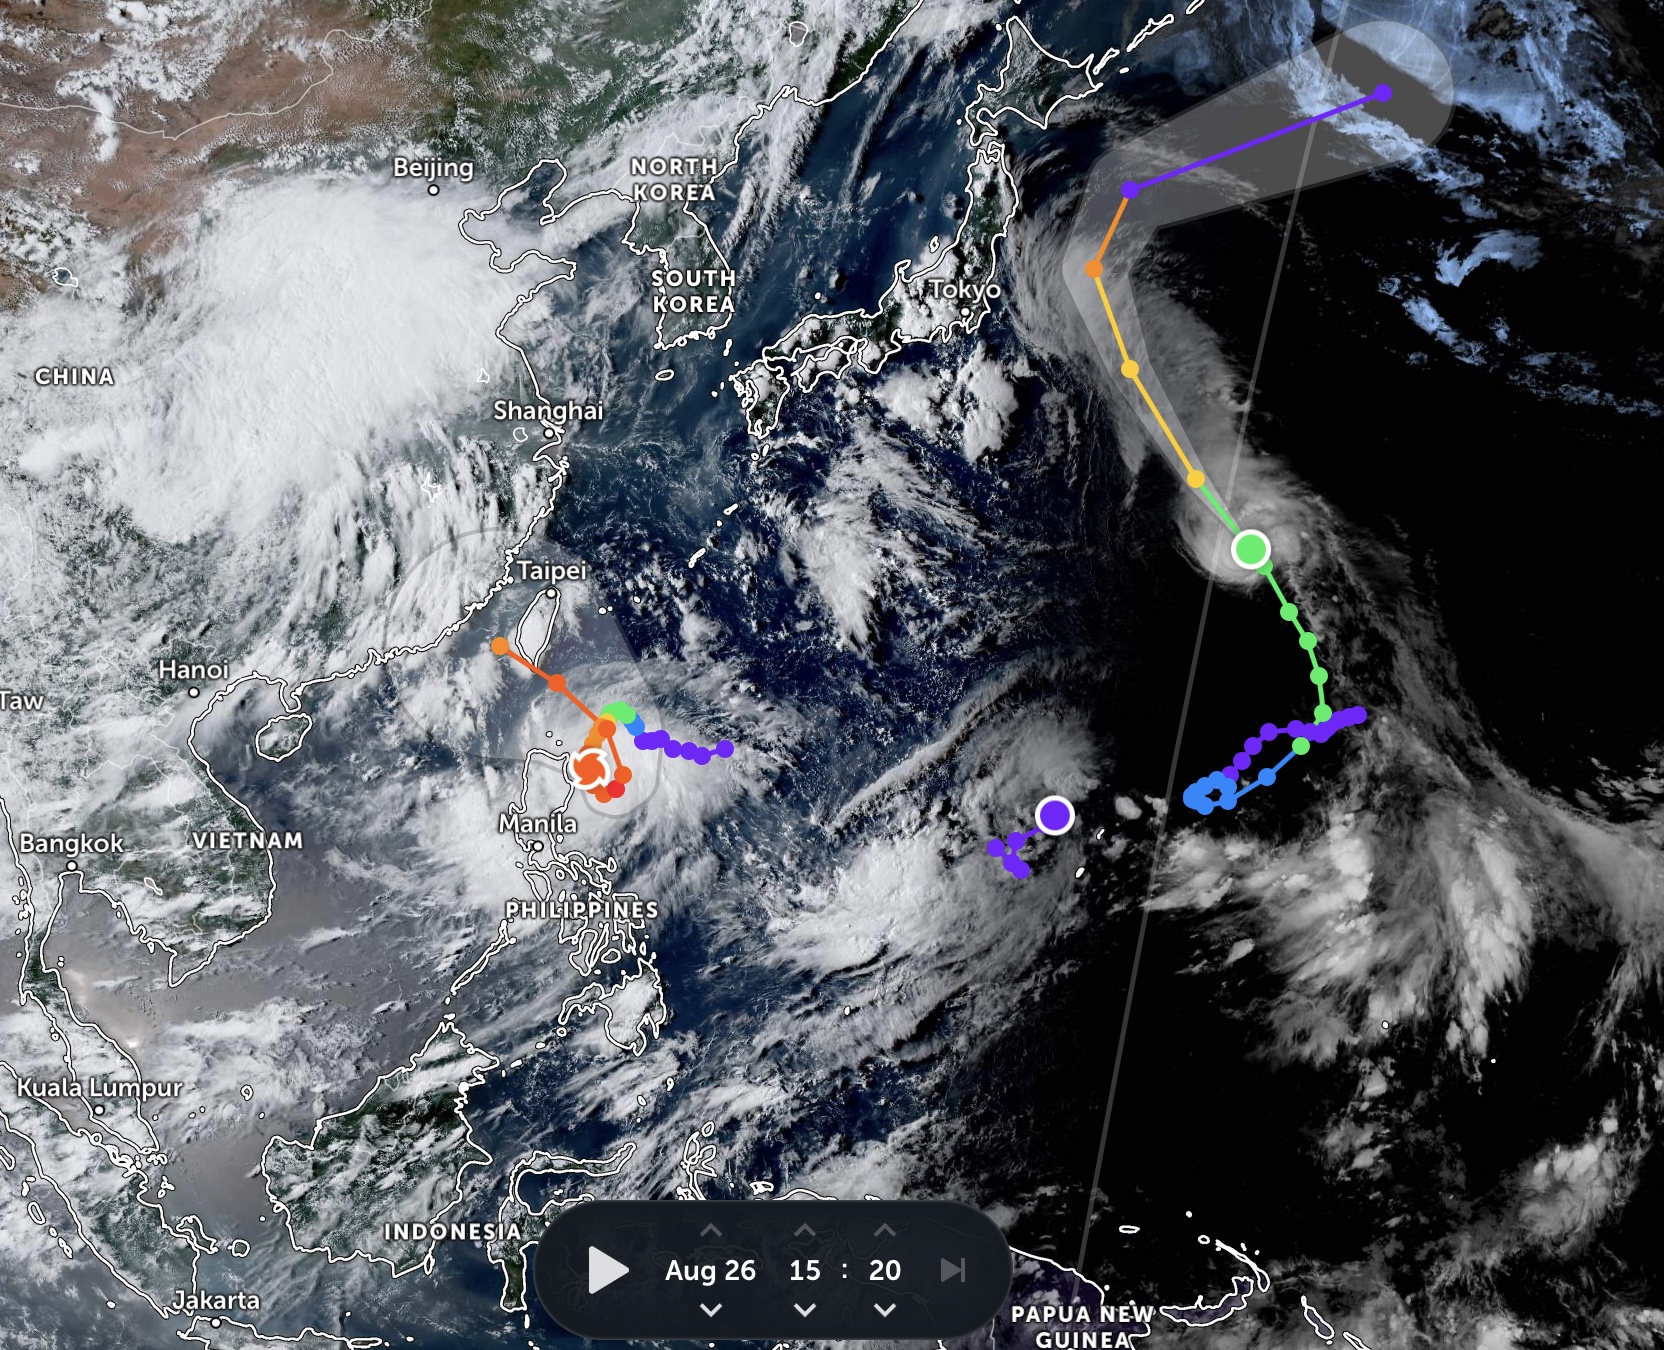 Bão nhiệt đới Damrey cùng một vùng áp thấp nhiệt đới gần đảo Guam có thể ảnh hưởng đến đường đi của bão Saola, khiến cơn bão này trở nên bất thường hơn. Ảnh: Himawari